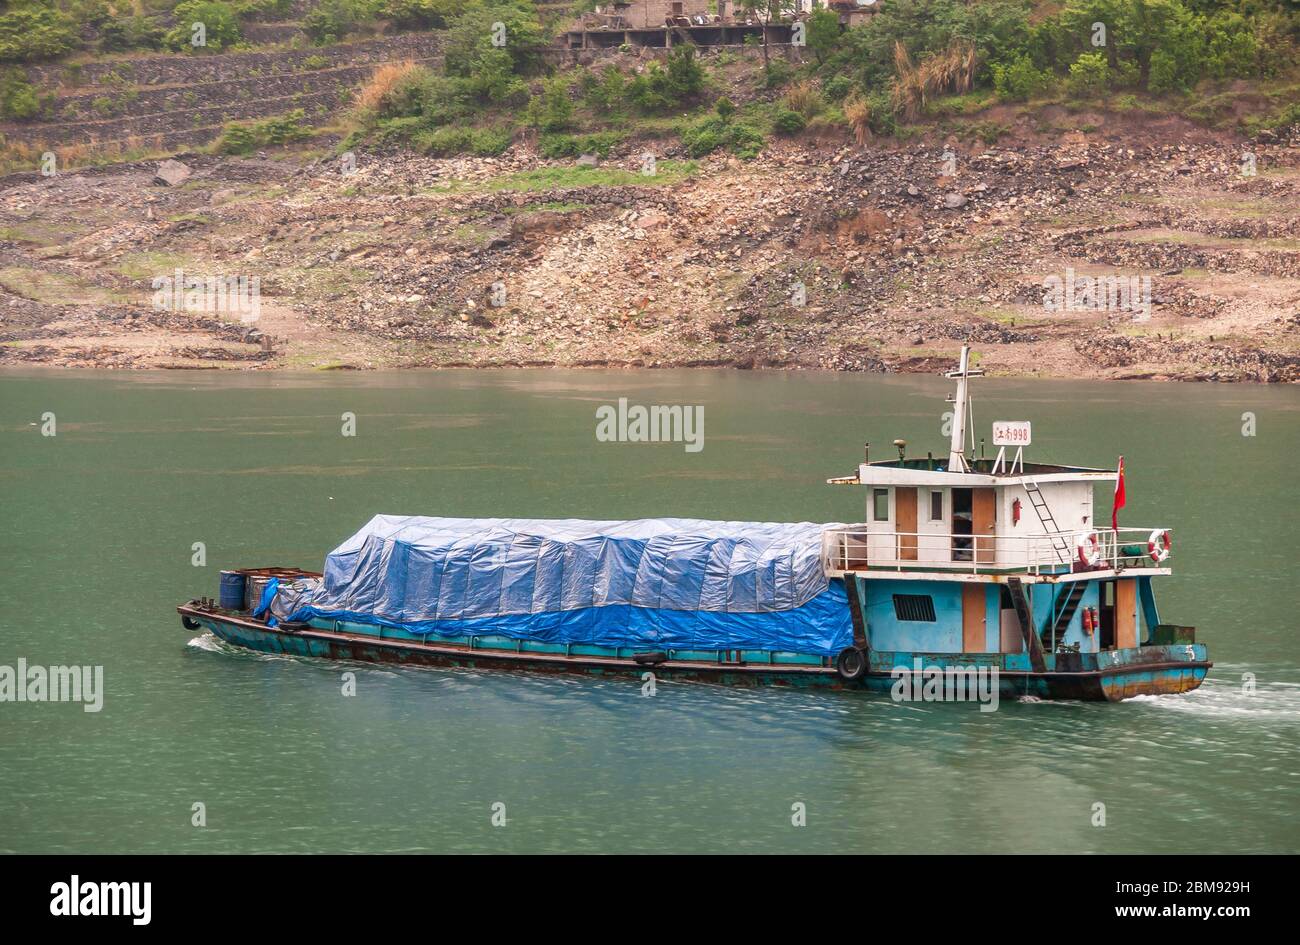 Xiangxicun, Chine - 6 mai 2010 : gorge de Xiling sur le fleuve Yangtze. Gros plan de la petite barge avec charge recouverte de bâche bleue sur l'eau verte. Pierre brune et Banque D'Images